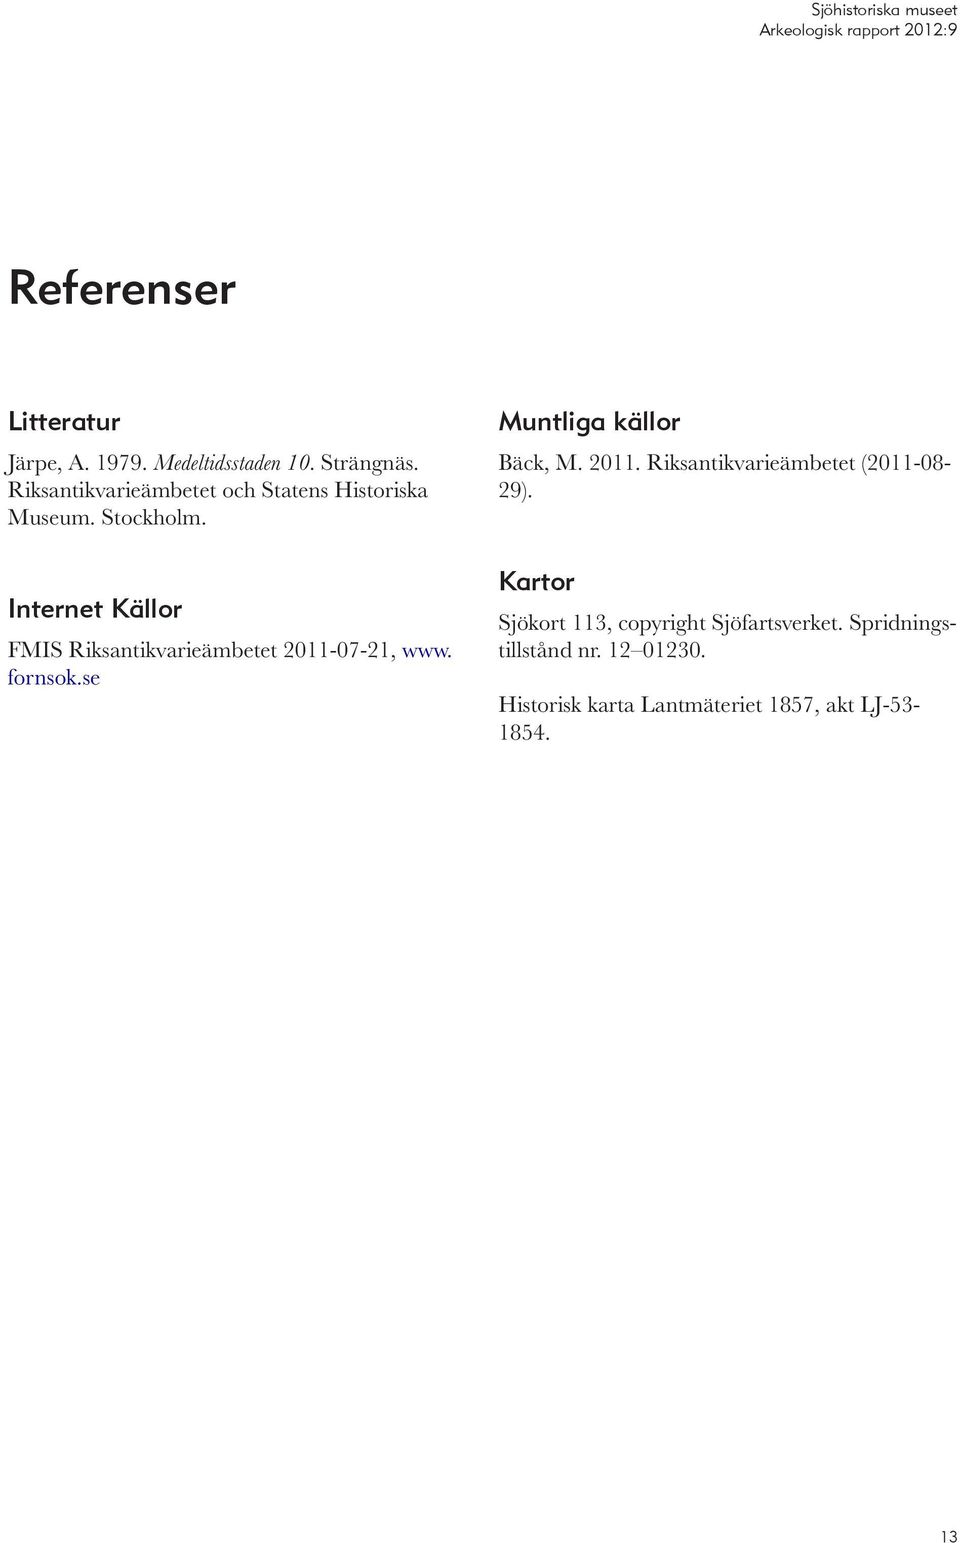 Internet Källor FMIS Riksantikvarieämbetet 2011-07-21, www. fornsok.se Muntliga källor Bäck, M. 2011. Riksantikvarieämbetet (2011-08- 29).